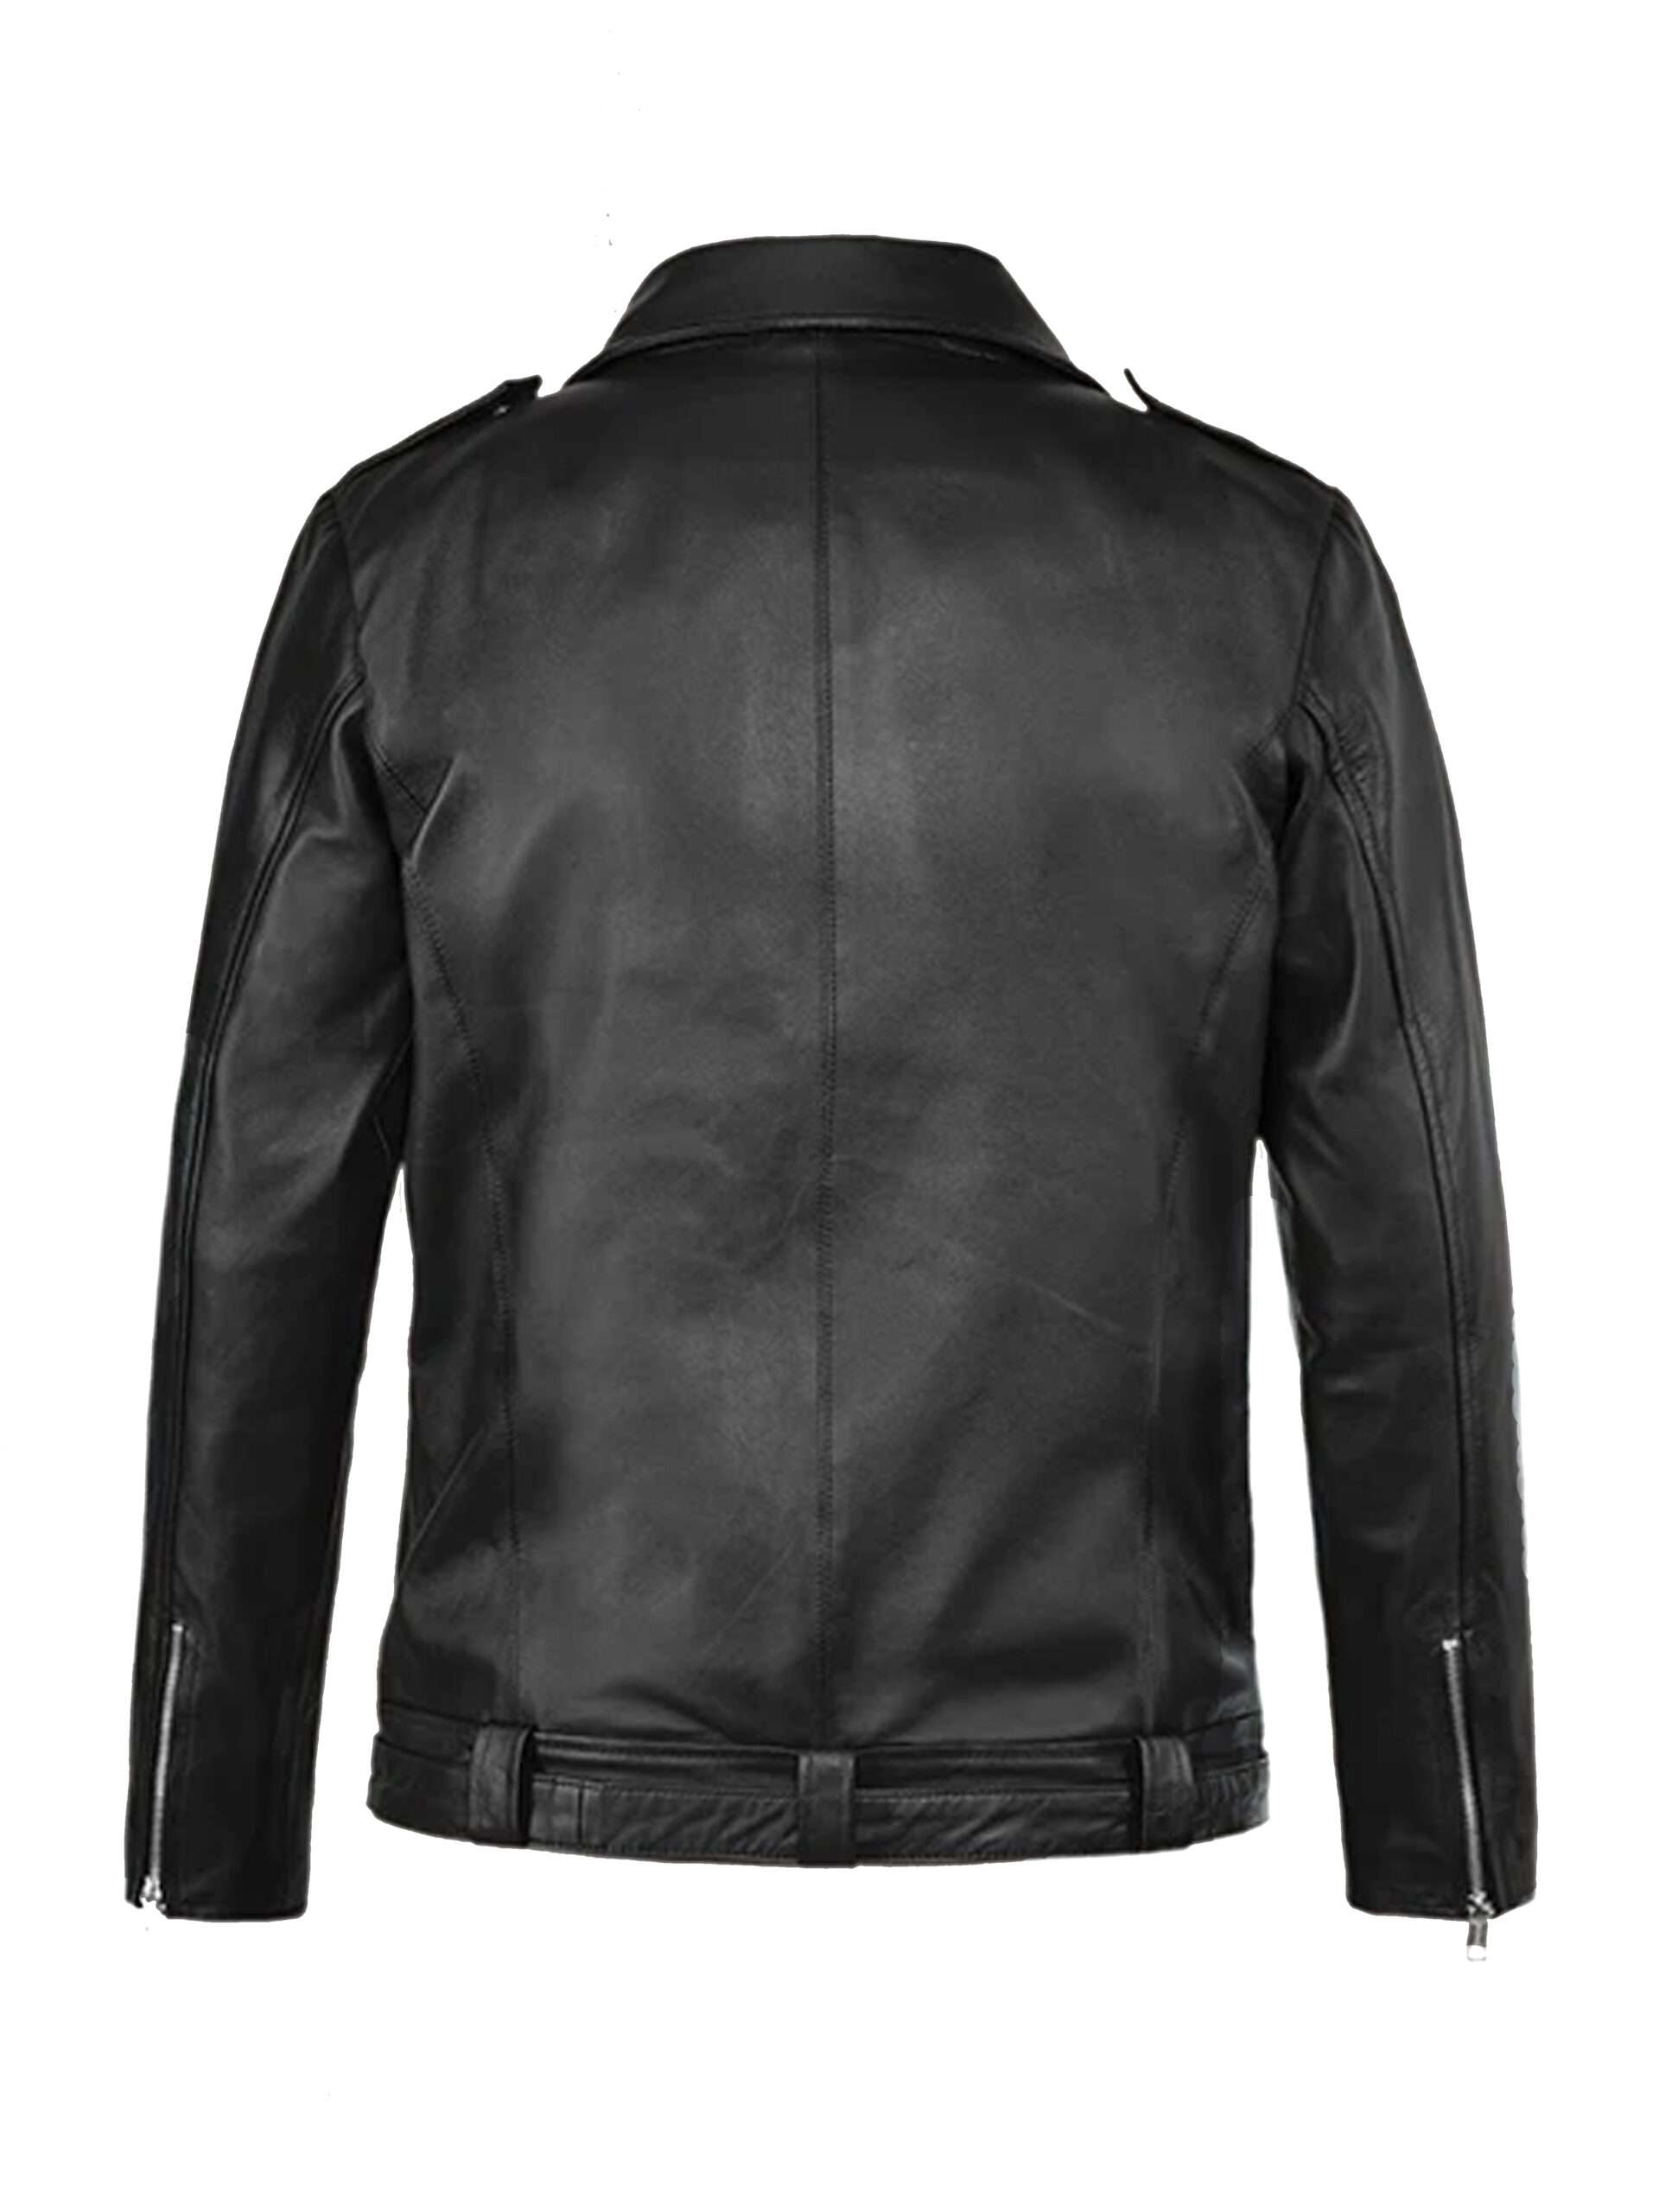 Jeffrey Dean Morgan The Walking Dead Leather Jacket